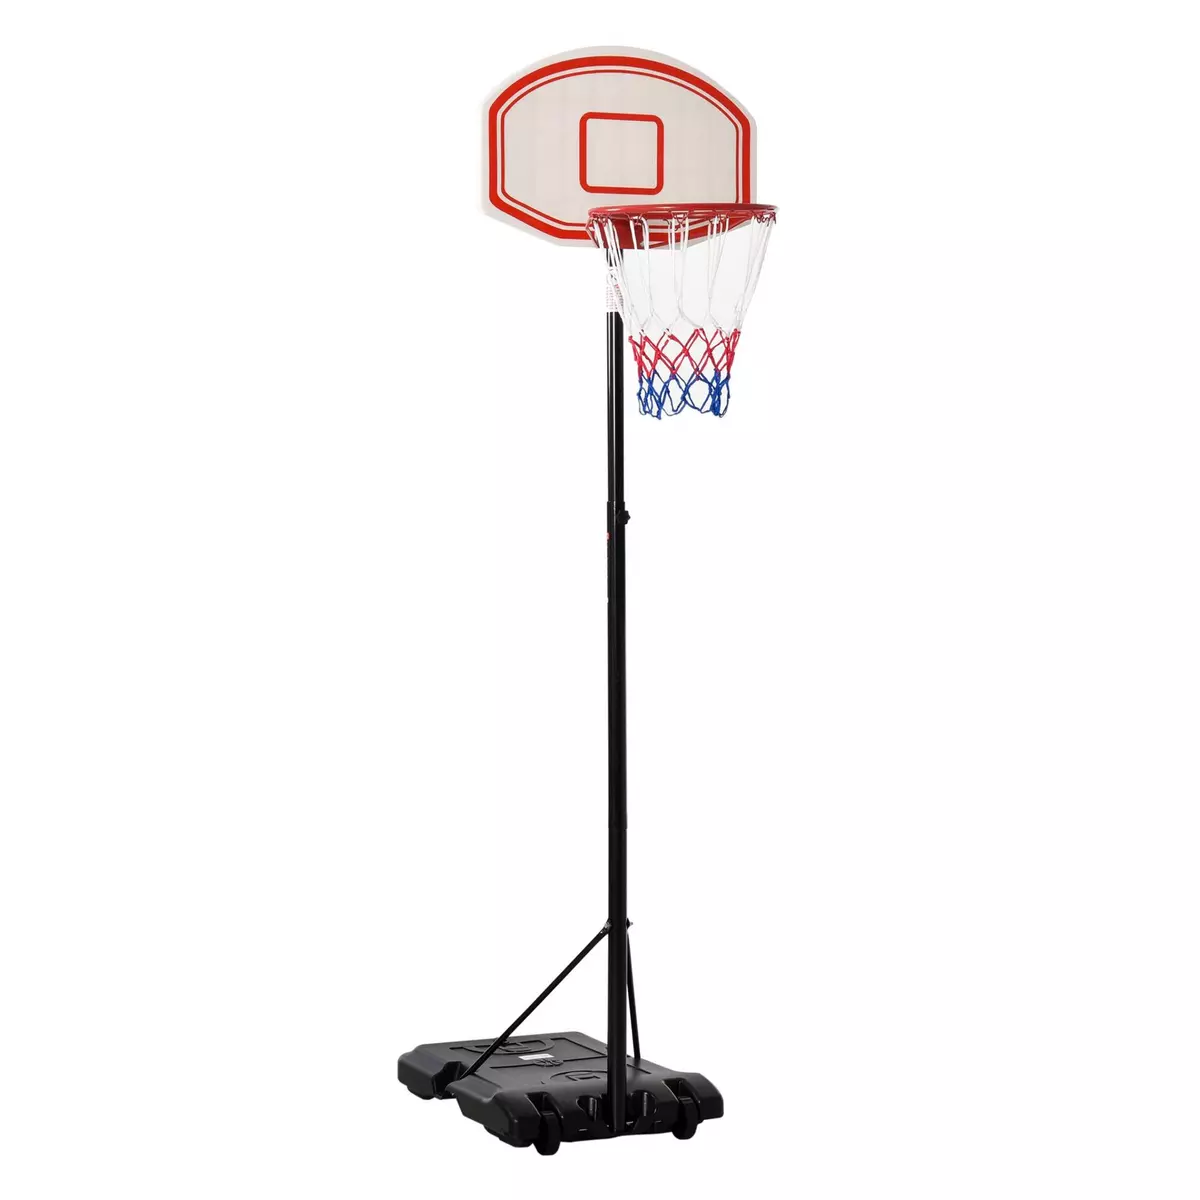 HOMCOM Panier de Basket-Ball sur pied avec poteau panneau, base de lestage sur roulettes hauteur réglable 2,1 - 2,5 m noir blanc